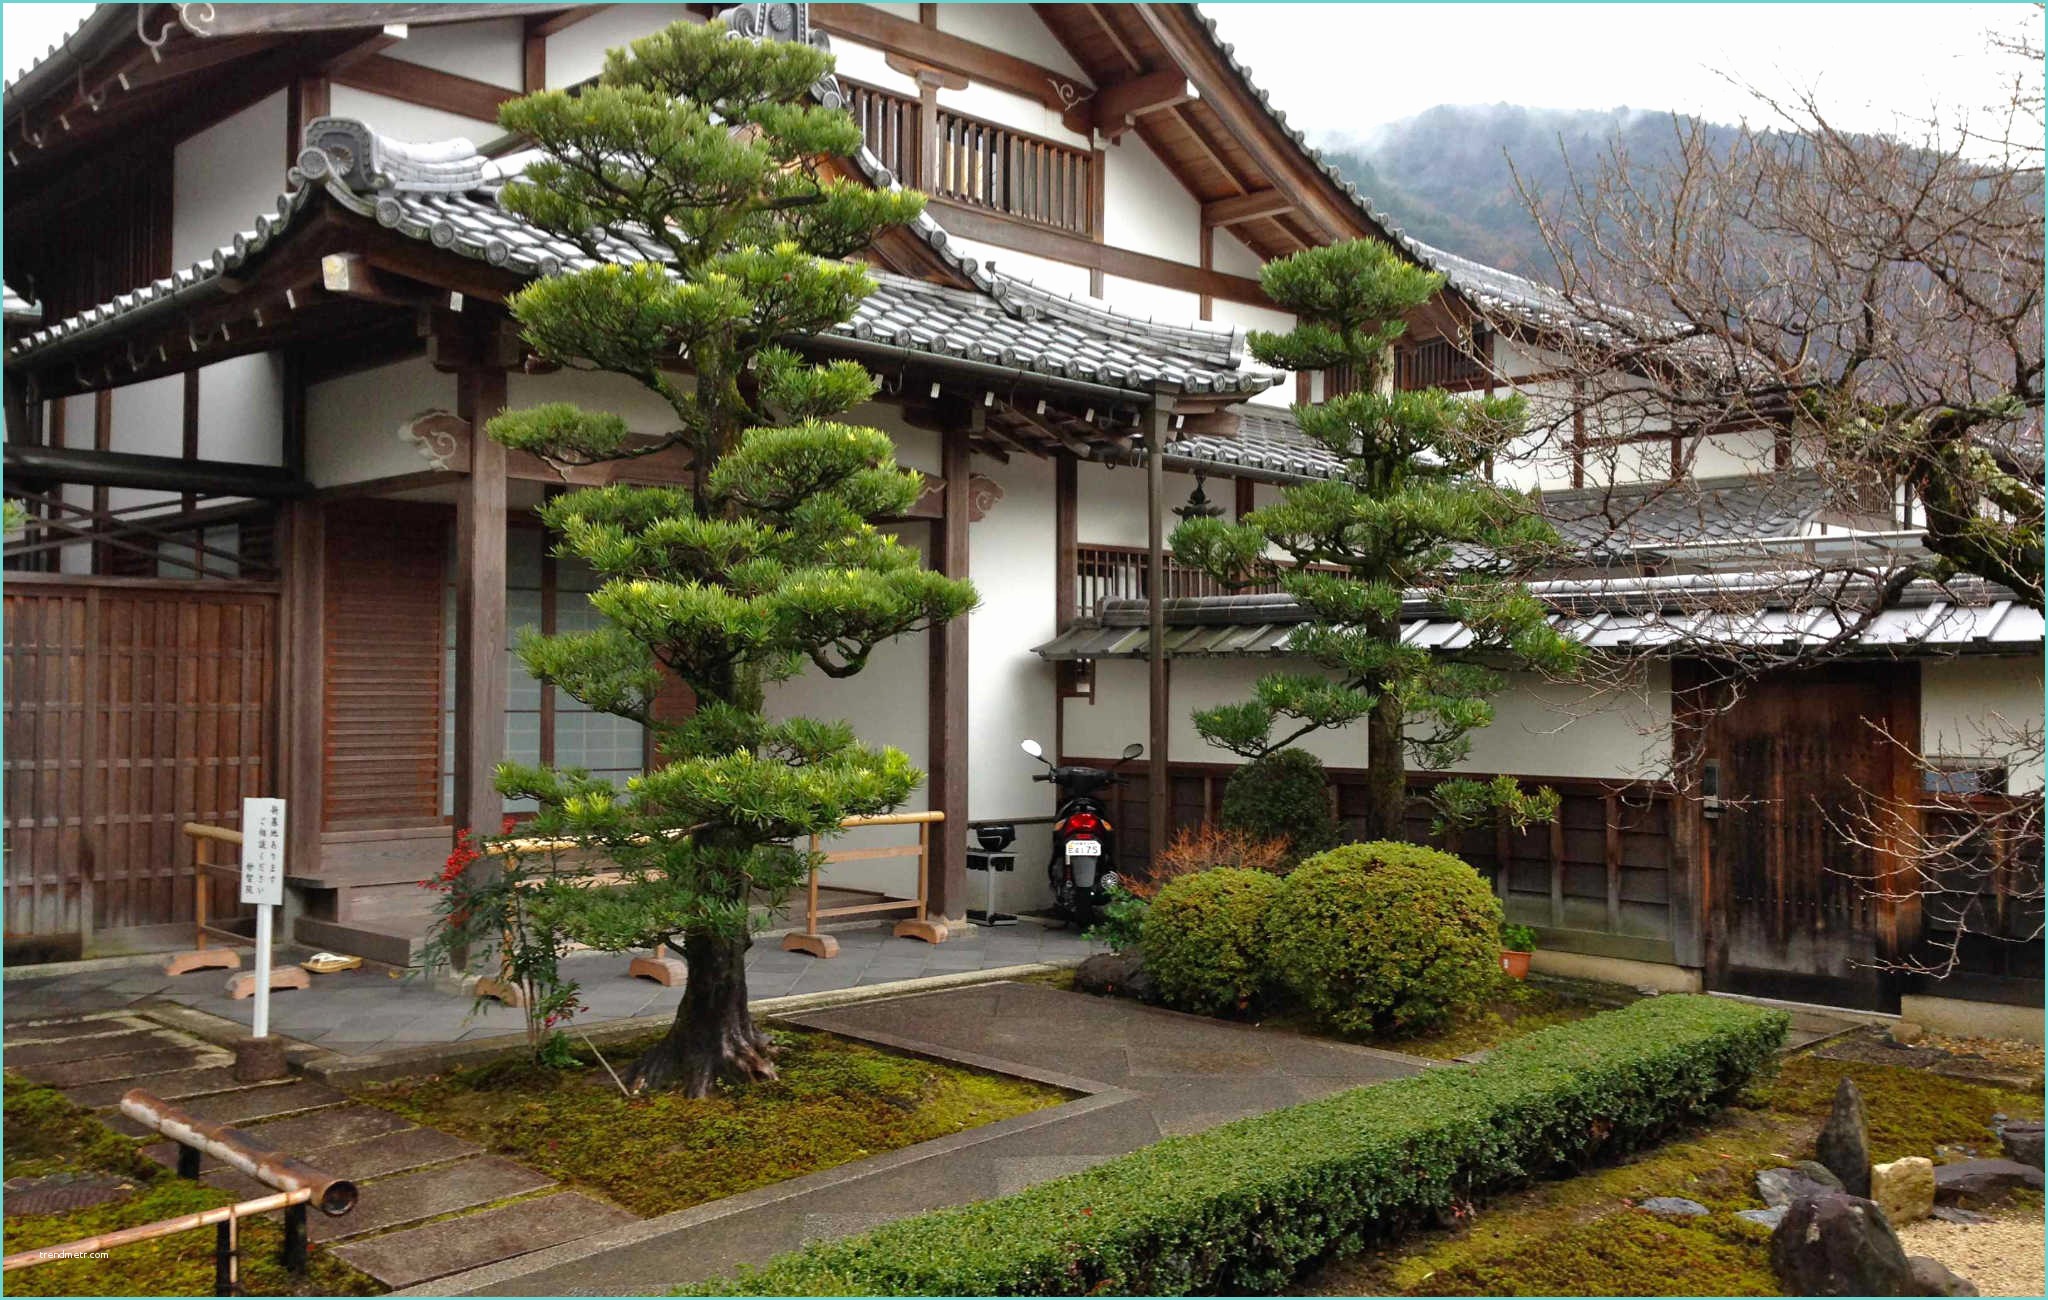 Maison Japonaise Traditionnelle Exterieur La Maison Traditionnelle Japonaise